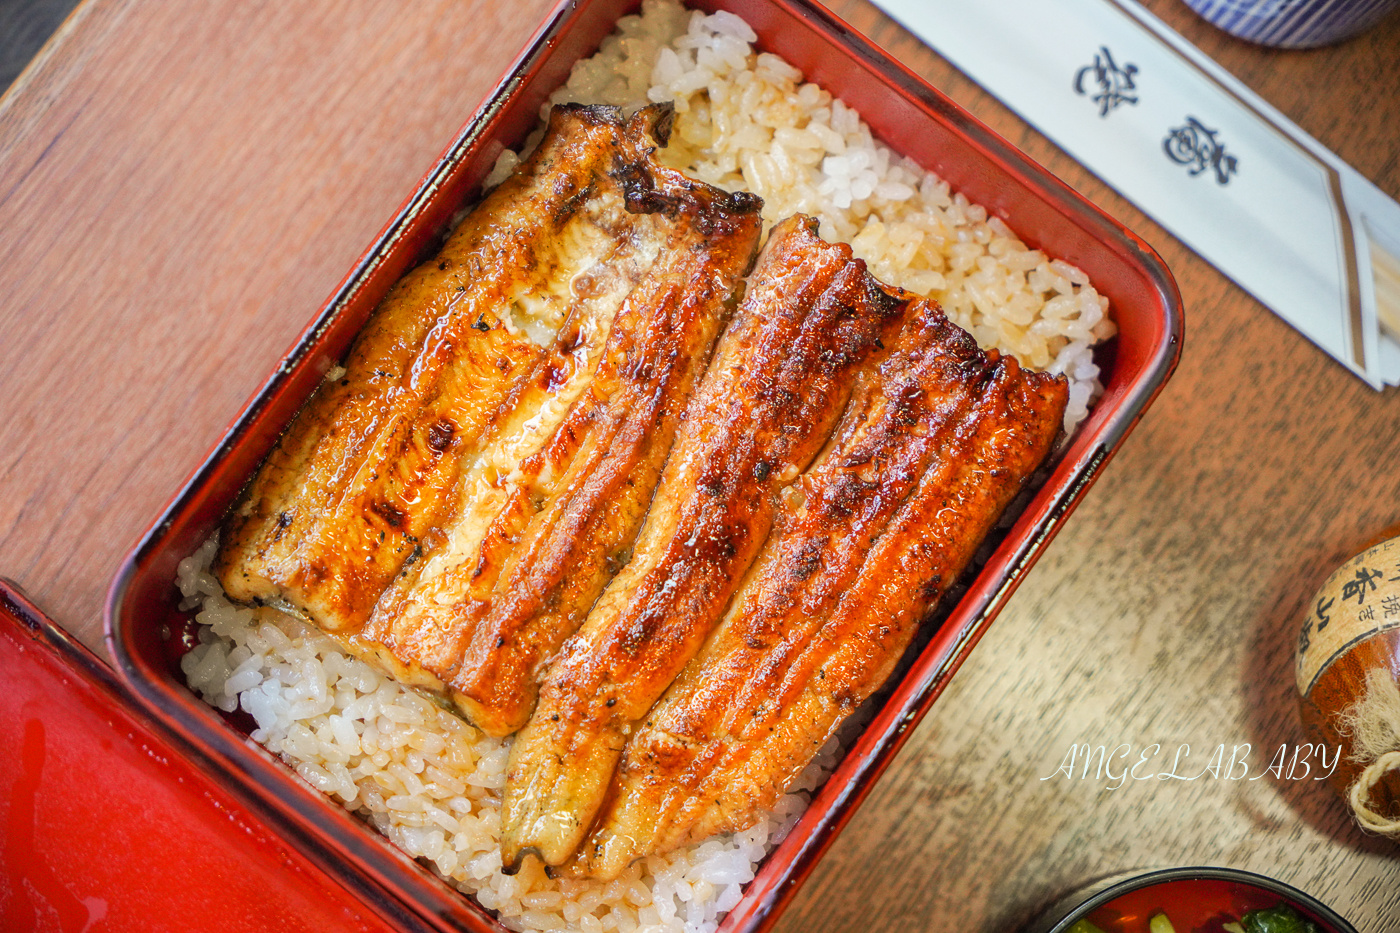 東京淺草必吃百年鰻魚飯『うなぎ色川鰻魚』菜單、日本人也大推的碳烤鰻魚飯 @梅格(Angelababy)享樂日記